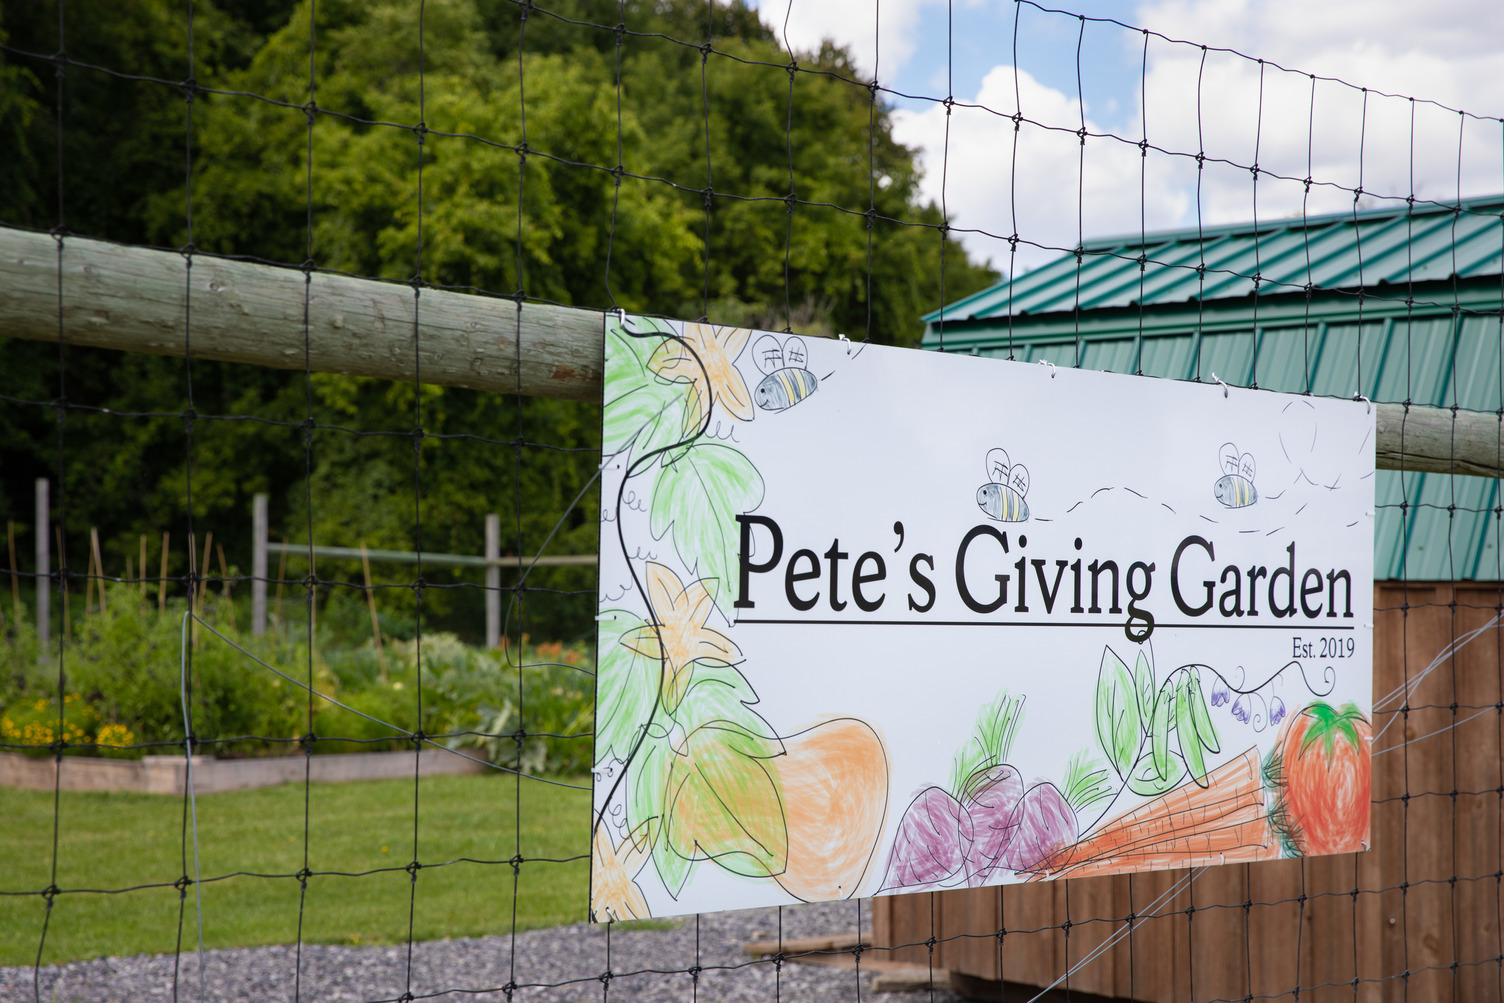 Pete's Giving Garden sign